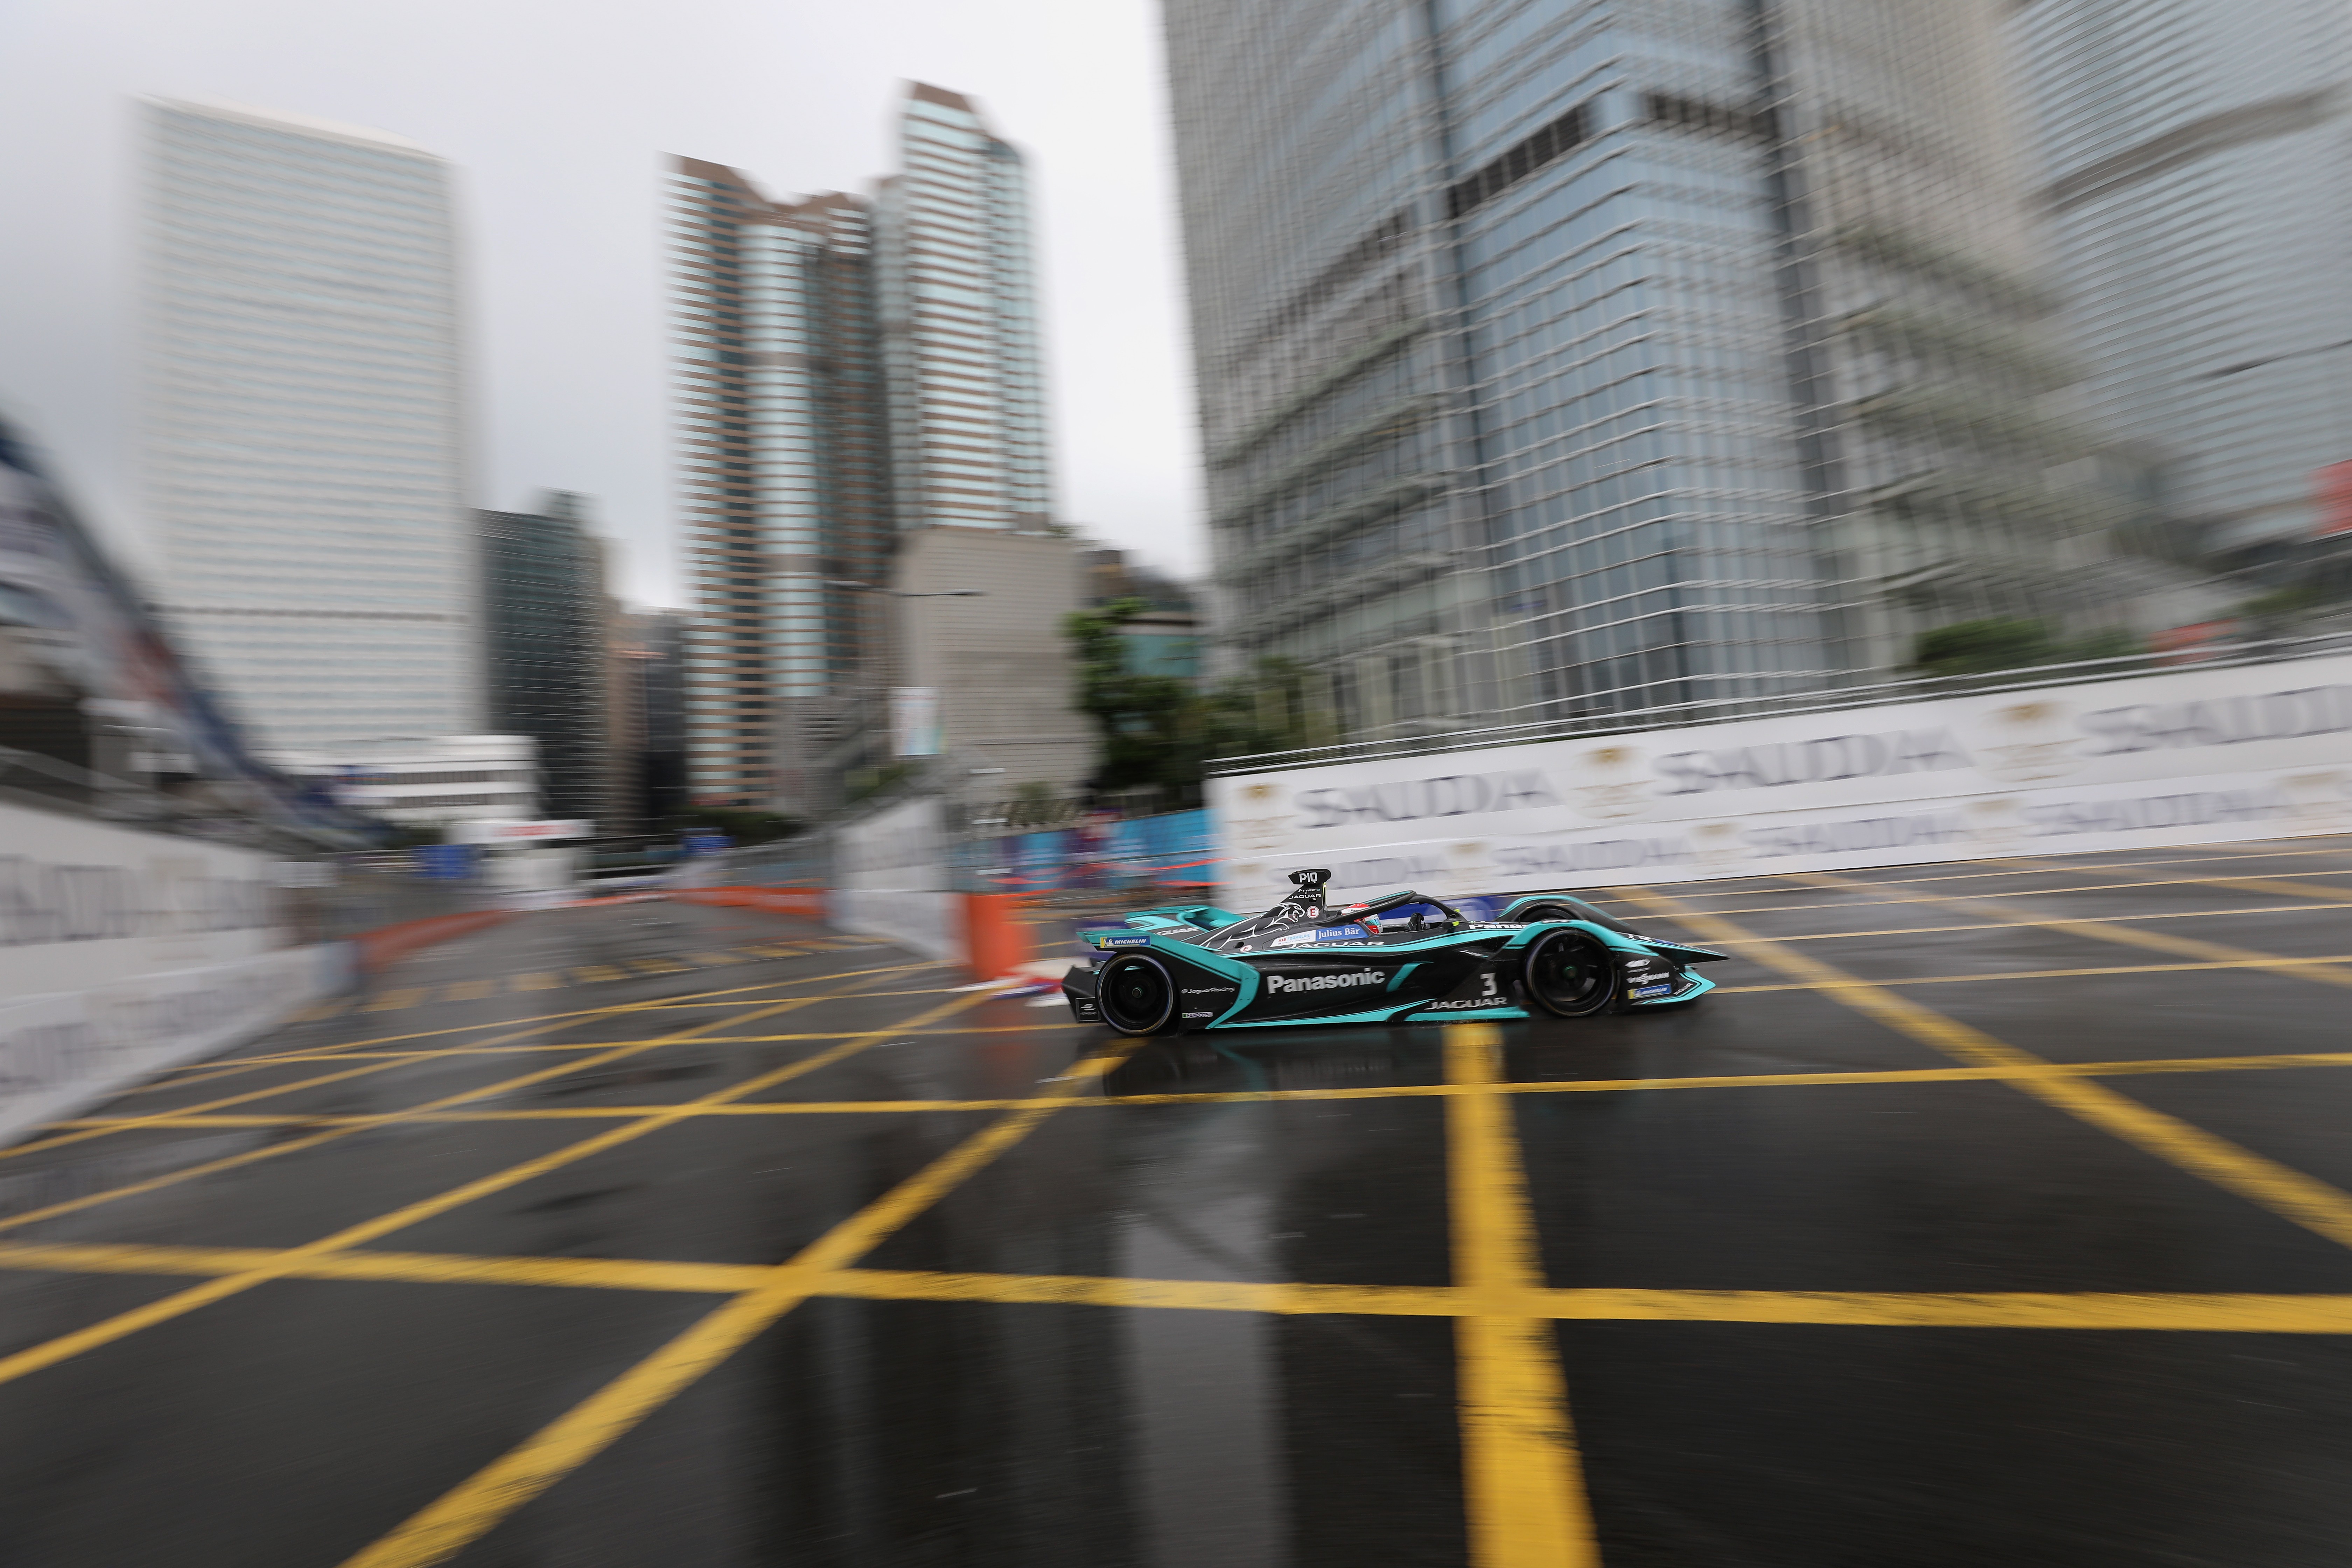 Nelson Piquet Jnr of Panasonic Jaguar Racing in action at the Hong Kong E-Prix. Photo: Sam Tsang